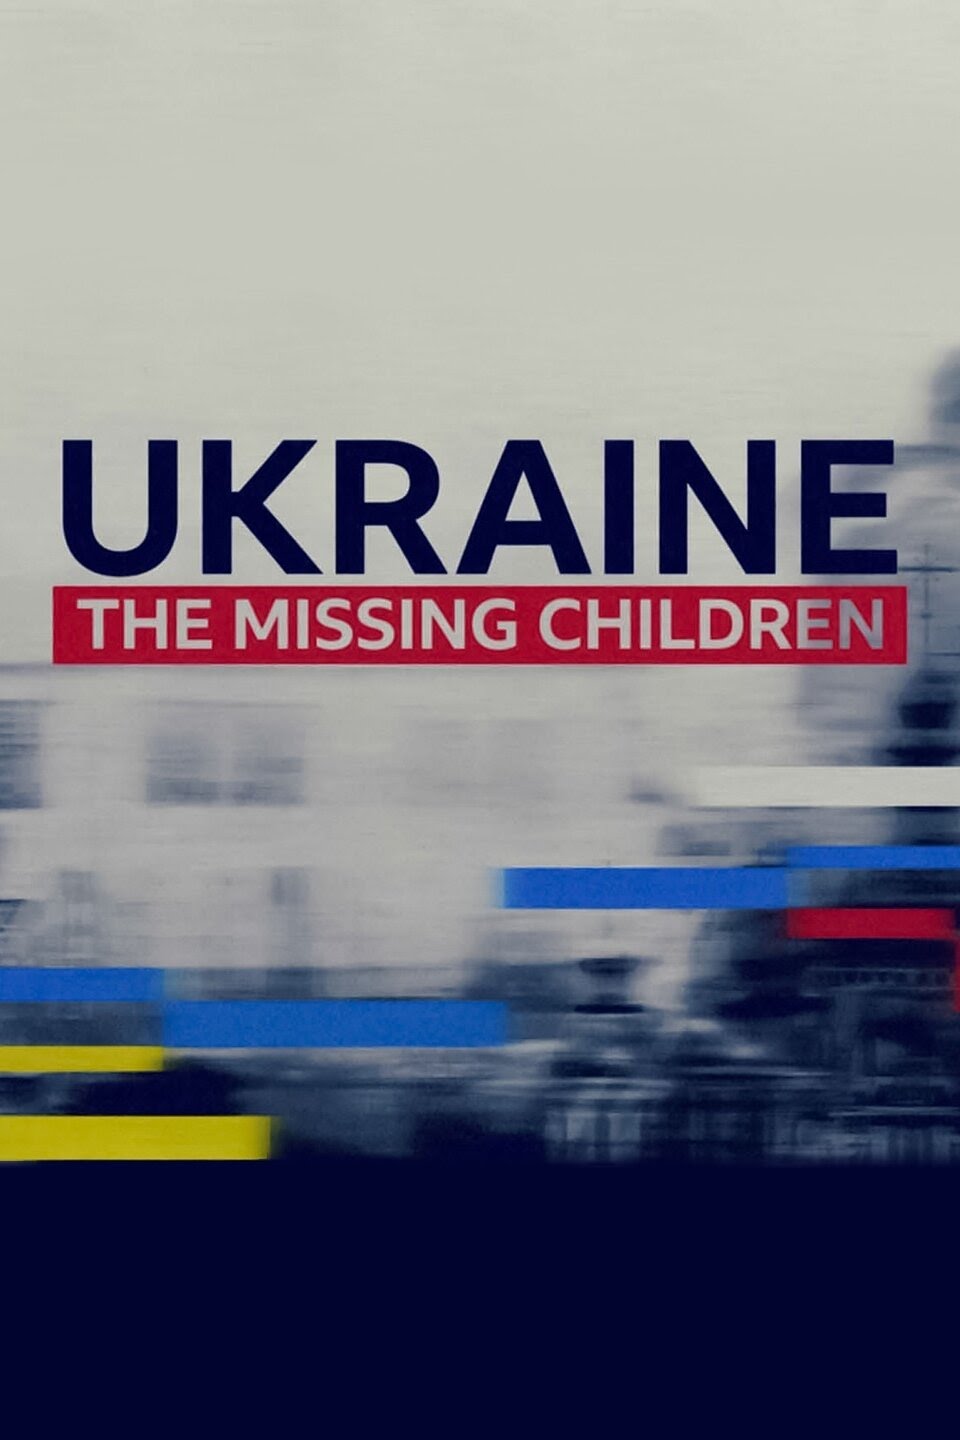 اوکراین: کودکان گمشده